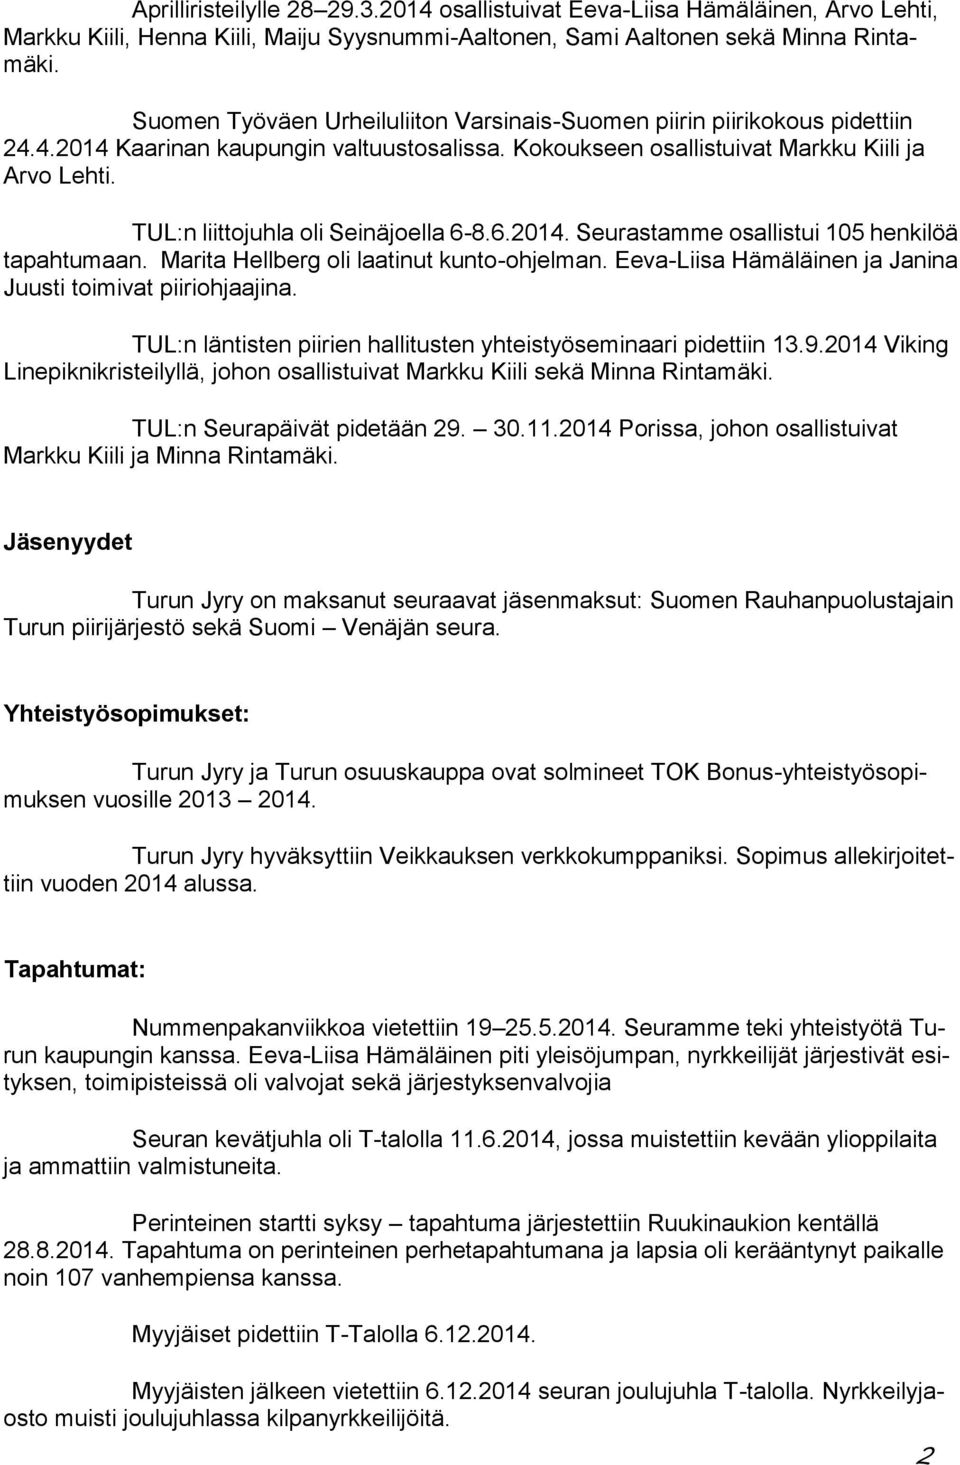 TUL:n liittojuhla oli Seinäjoella 6-8.6.2014. Seurastamme osallistui 105 henkilöä tapahtumaan. Marita Hellberg oli laatinut kunto-ohjelman.